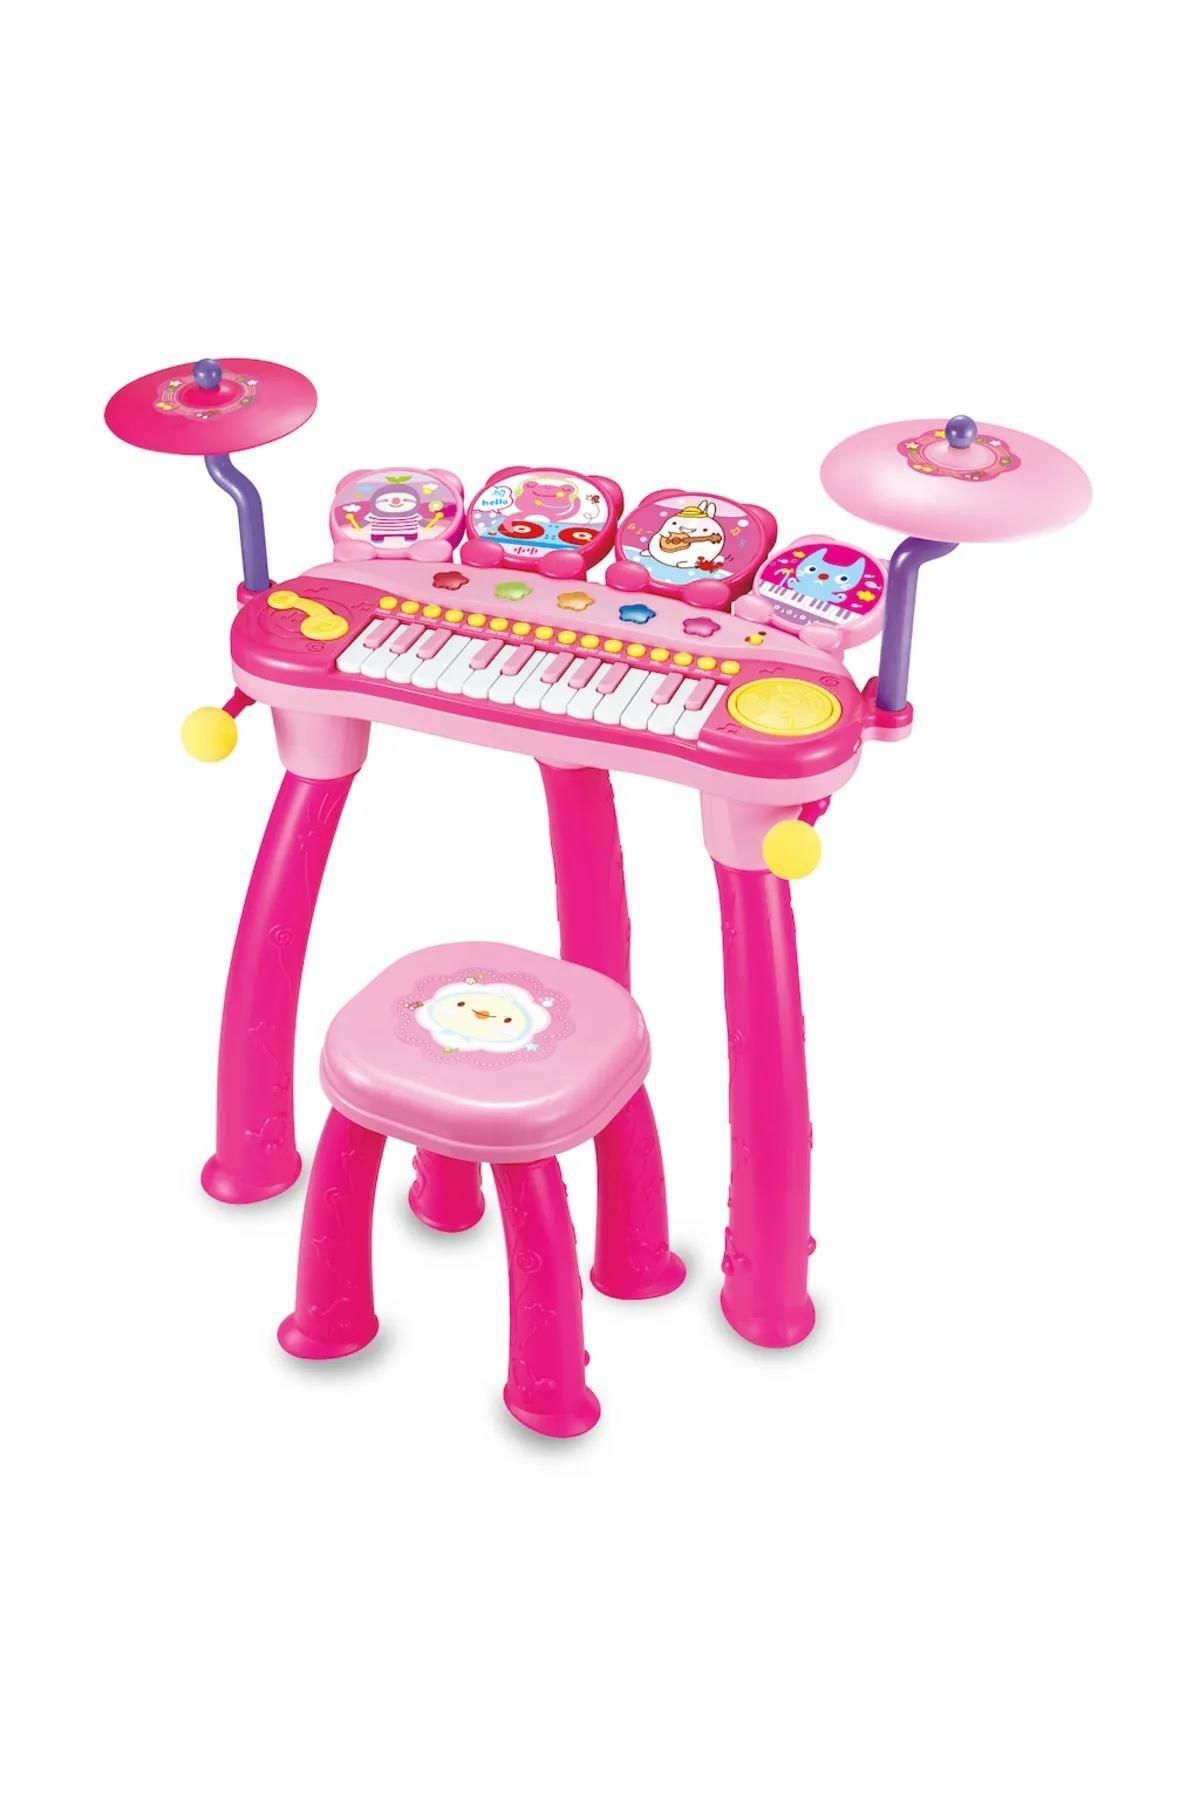 Peda Toy Oturma Sandalyeli Piyano Bateri Seti 24 Tuşlu Mp3 Çalar Mikrofonlu Pembe